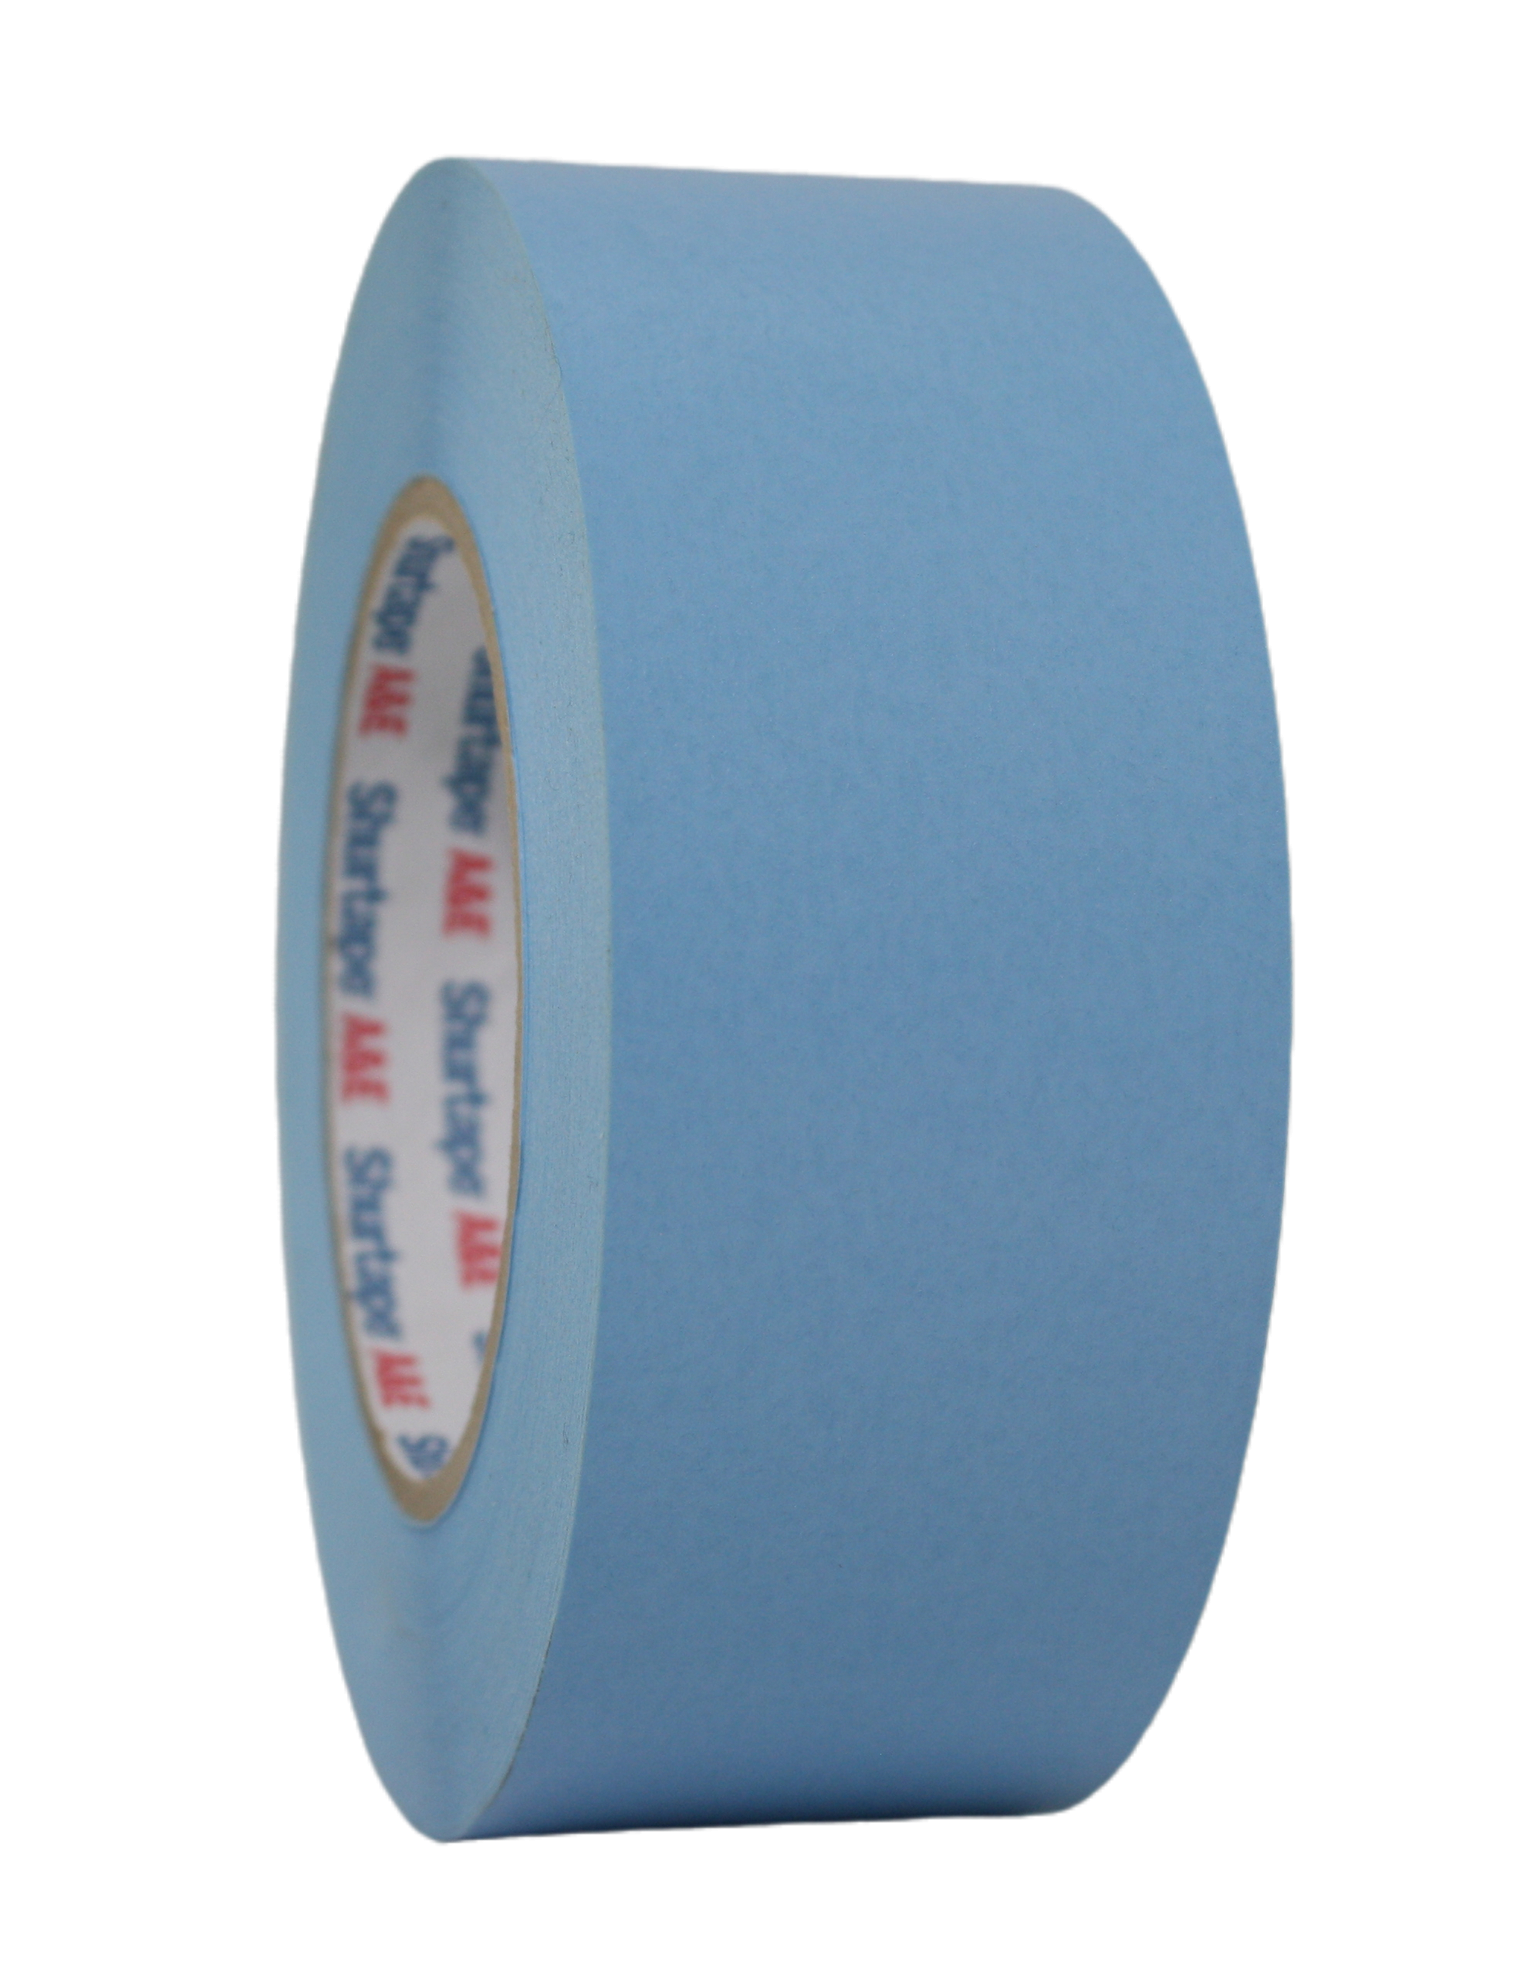 Shurtape 2" Paper Tape, light blue